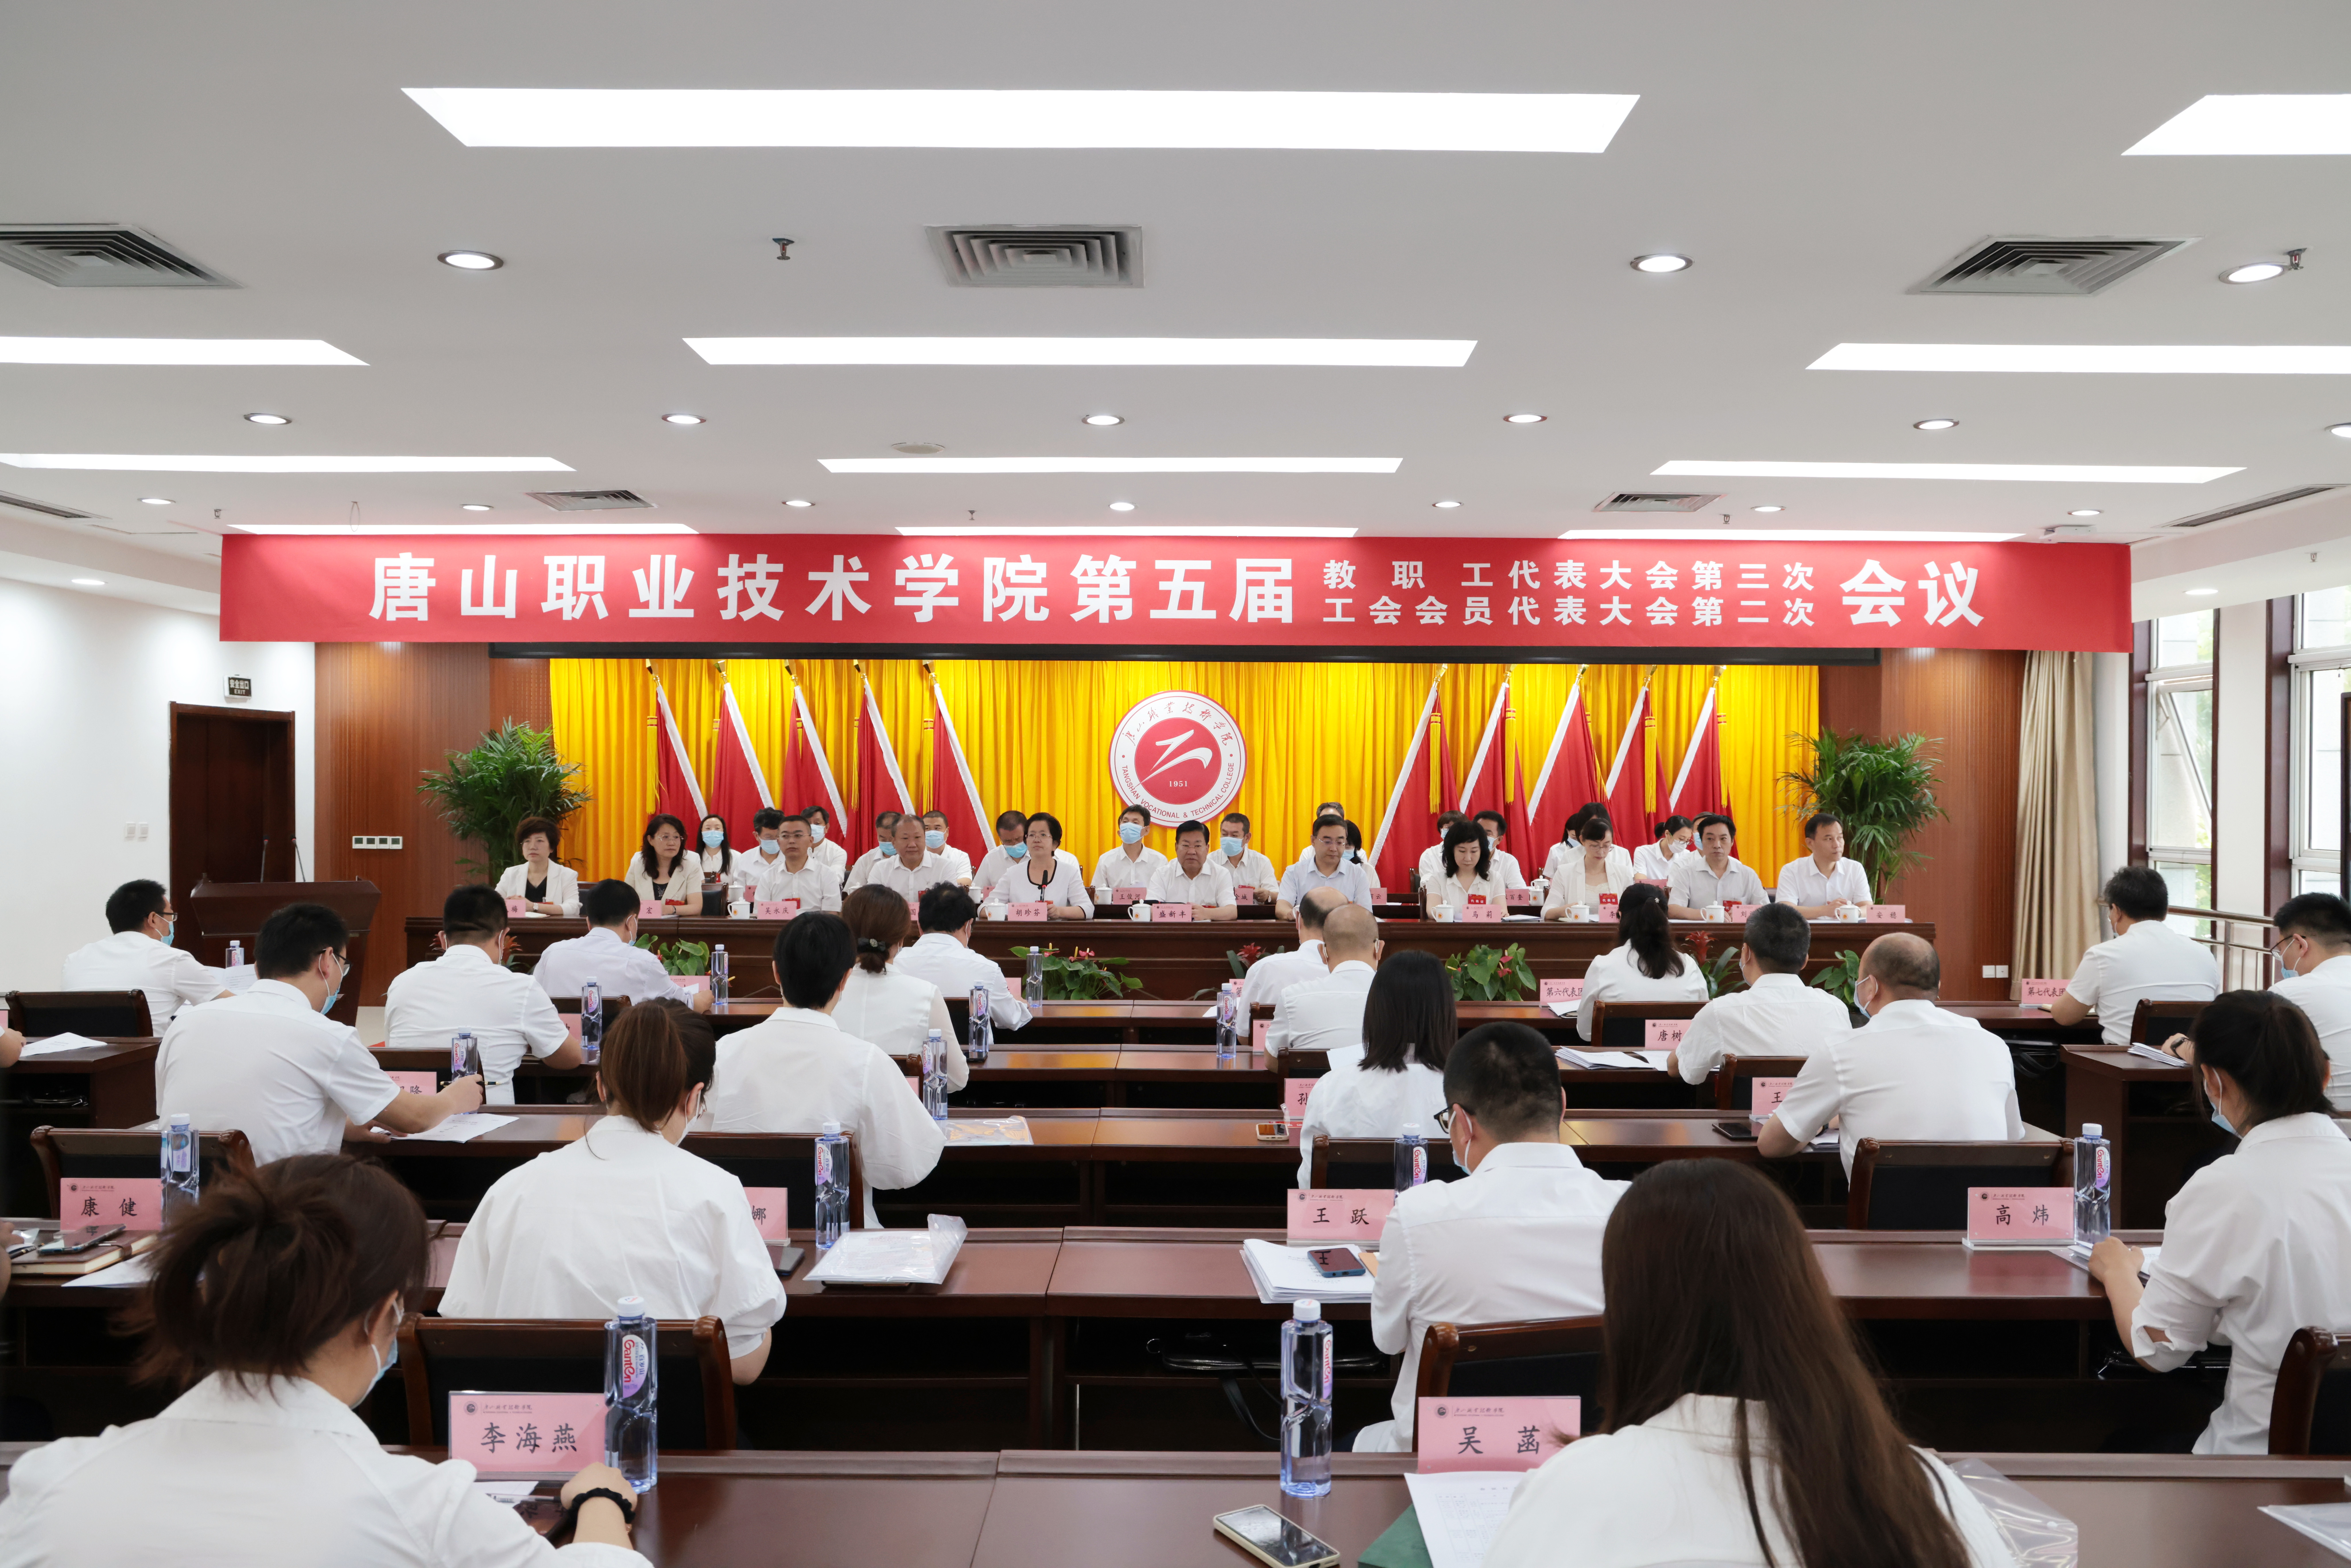     唐山职院召开第五届教职工代表大会第三次会议、...